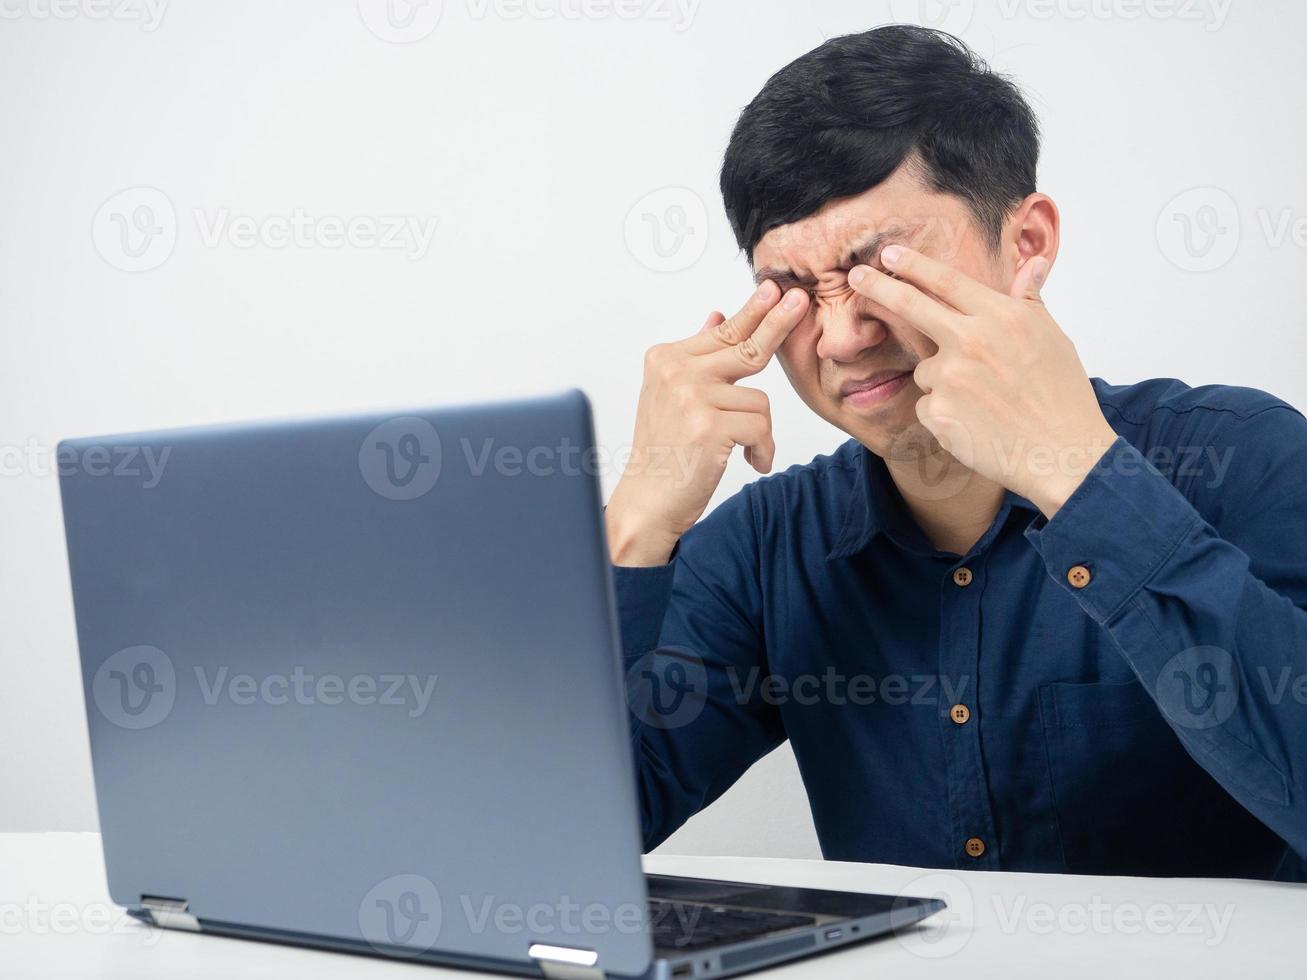 empleado masculino con computadora portátil trató de trabajar y siente fatiga visual, ojo aplastado foto